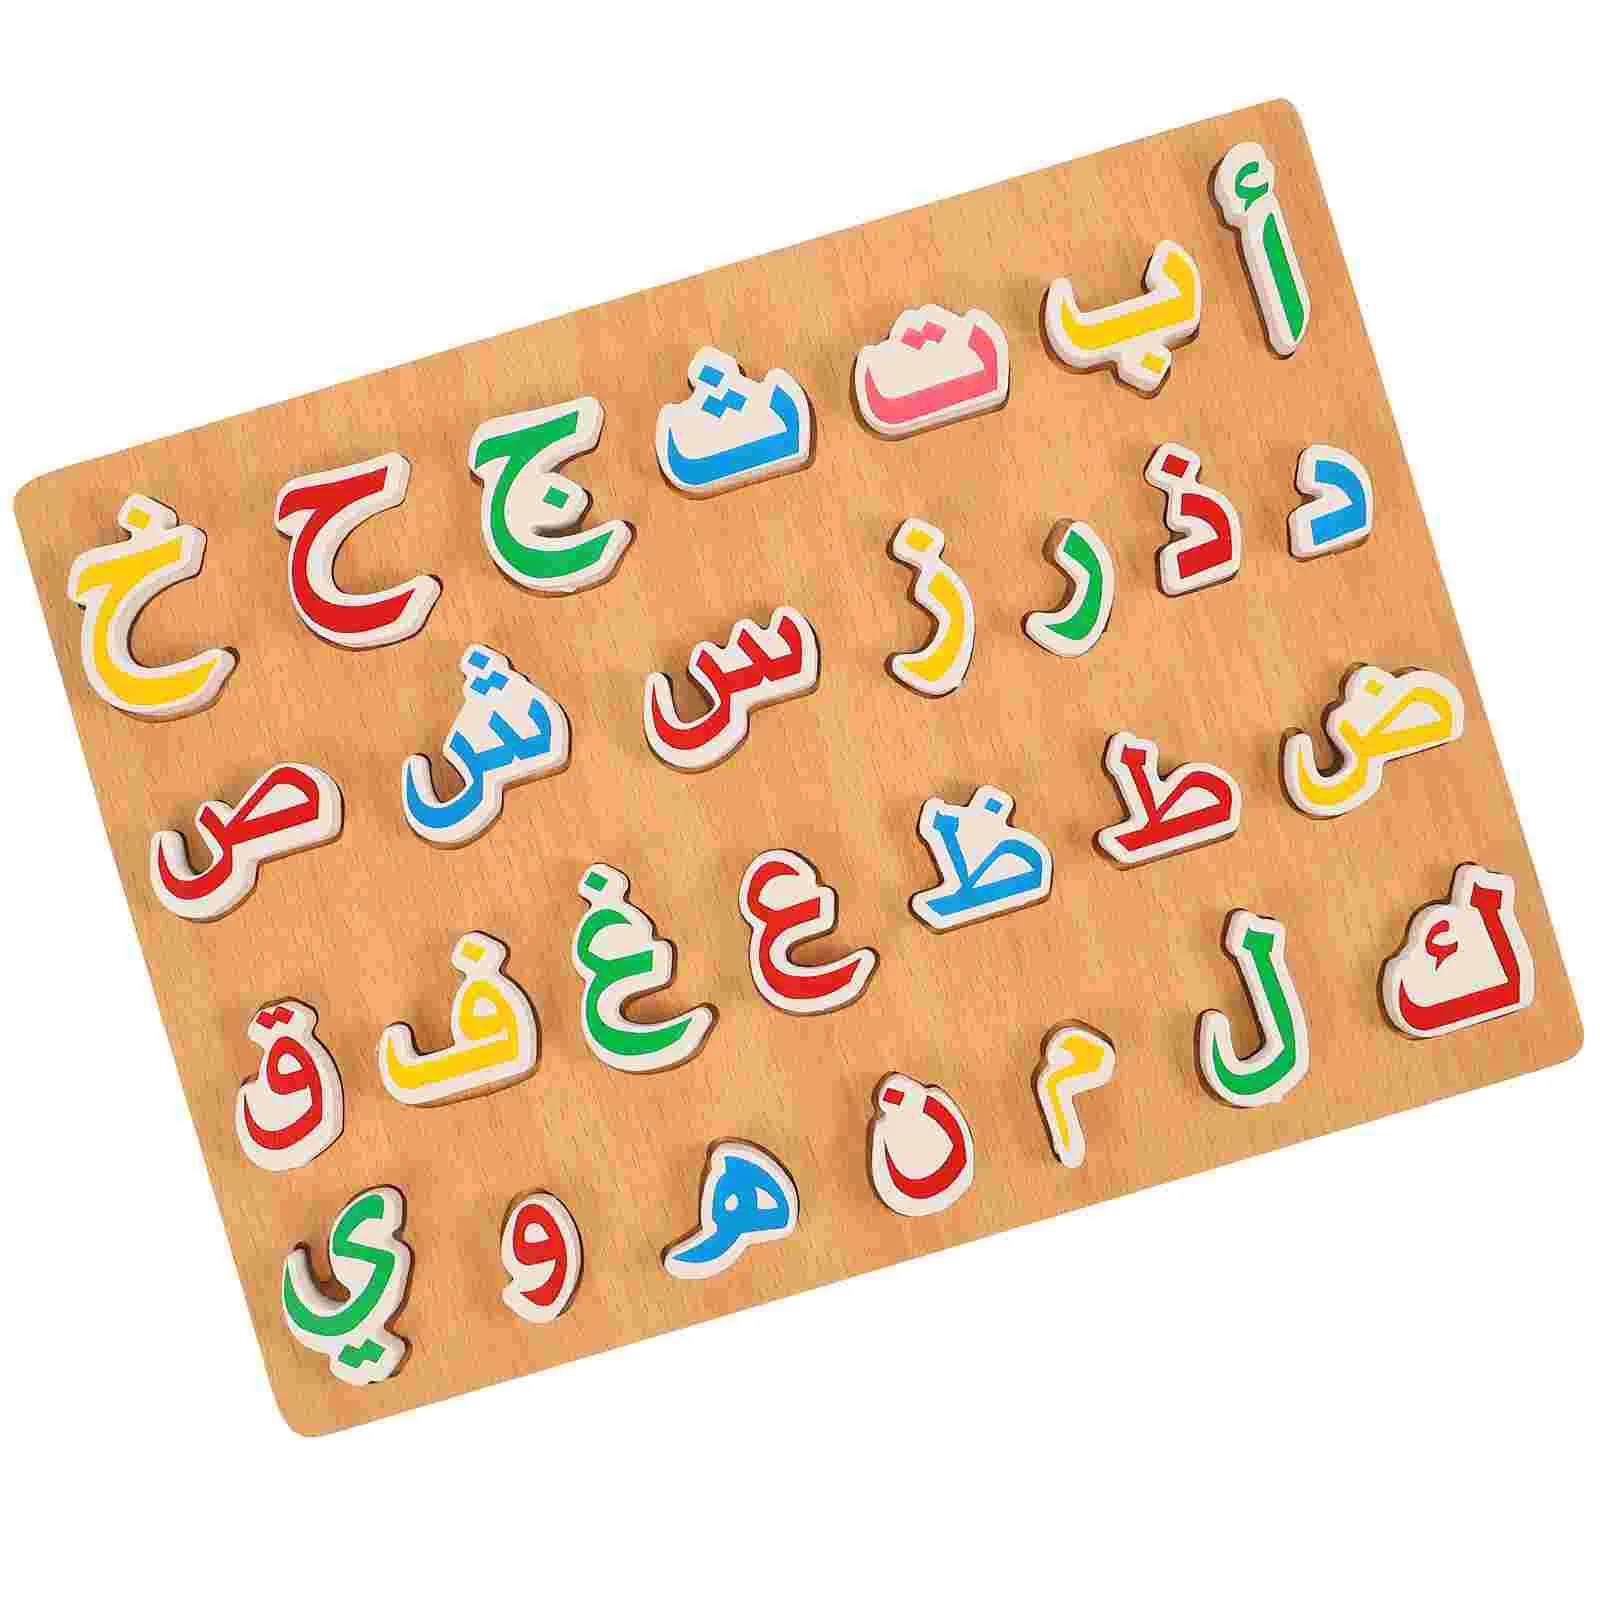 

Пазл, арабский малыш, деревянные головоломки для малышей, подходящая игрушка, детские учебные пособия